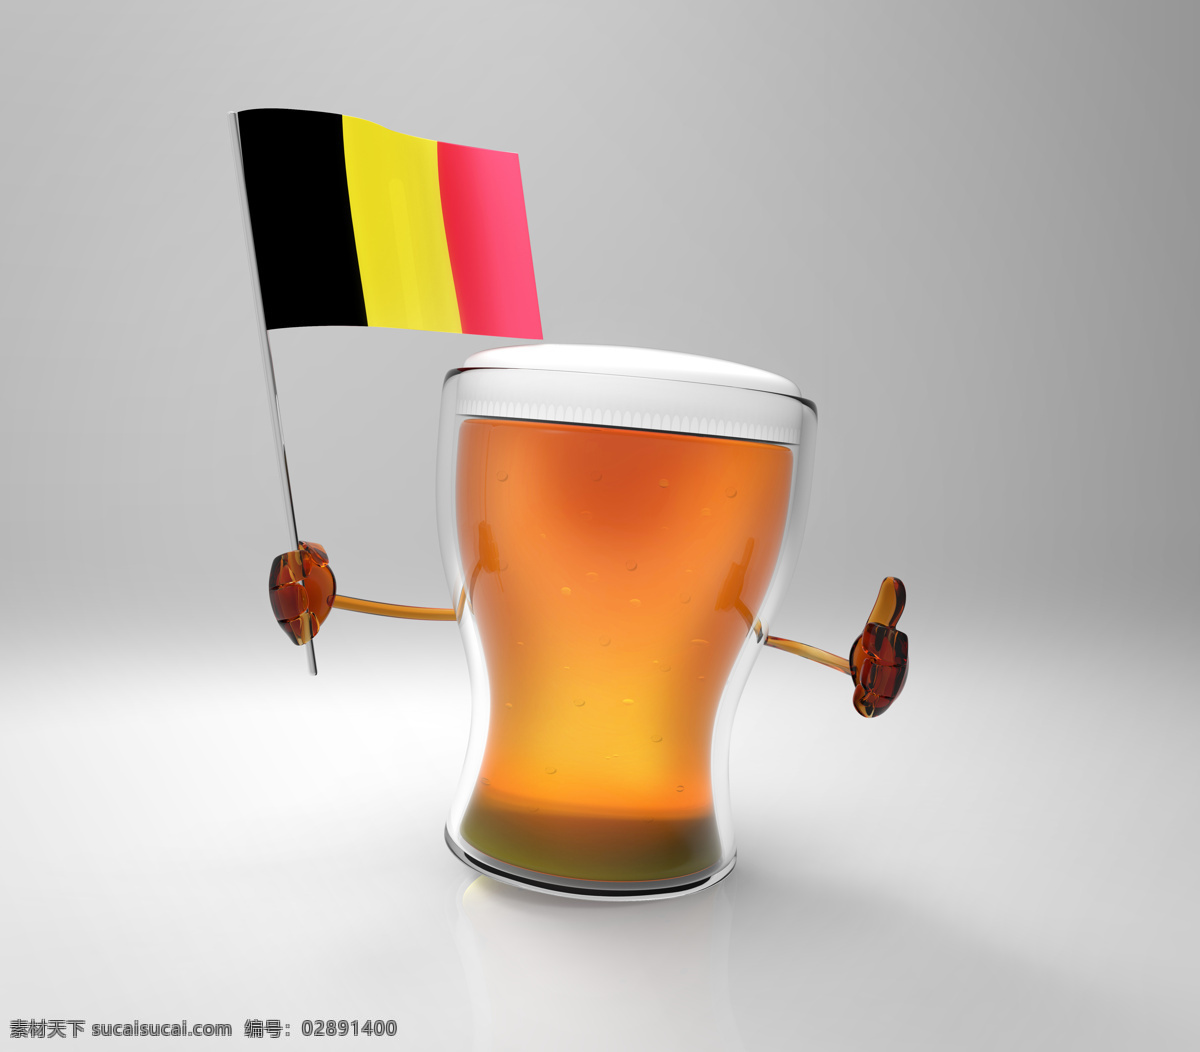 比利时 国旗 啤酒 旗子 餐厅美食 美味 饮料 比利时国旗 酒类图片 餐饮美食